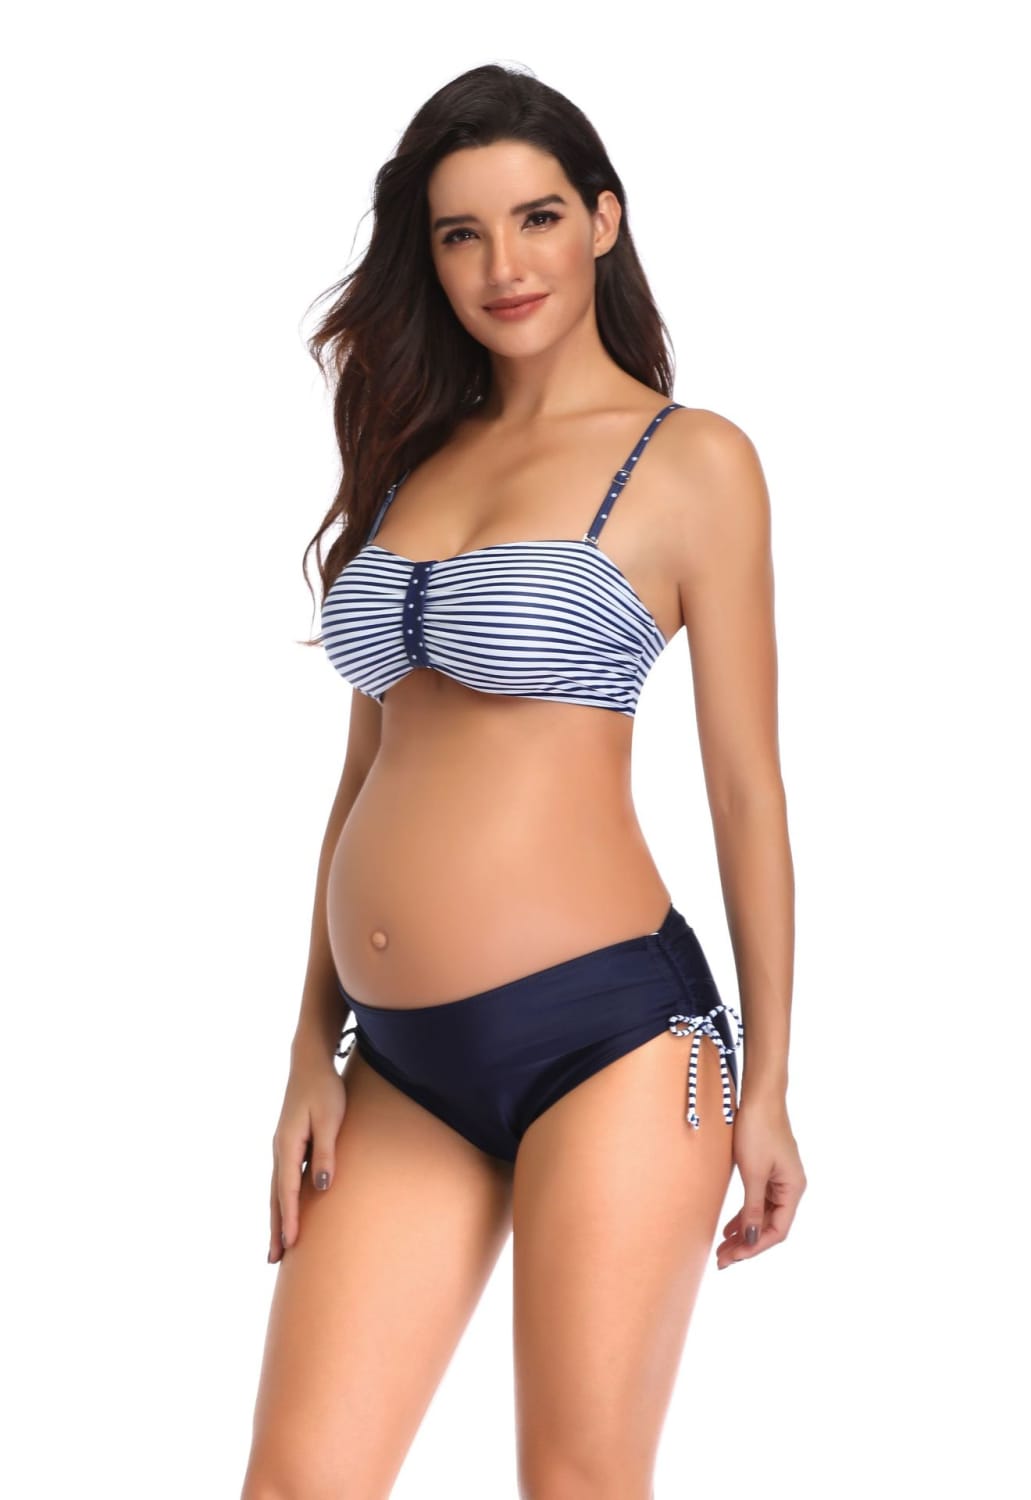 Lovemi - Pregnant women split swimsuit